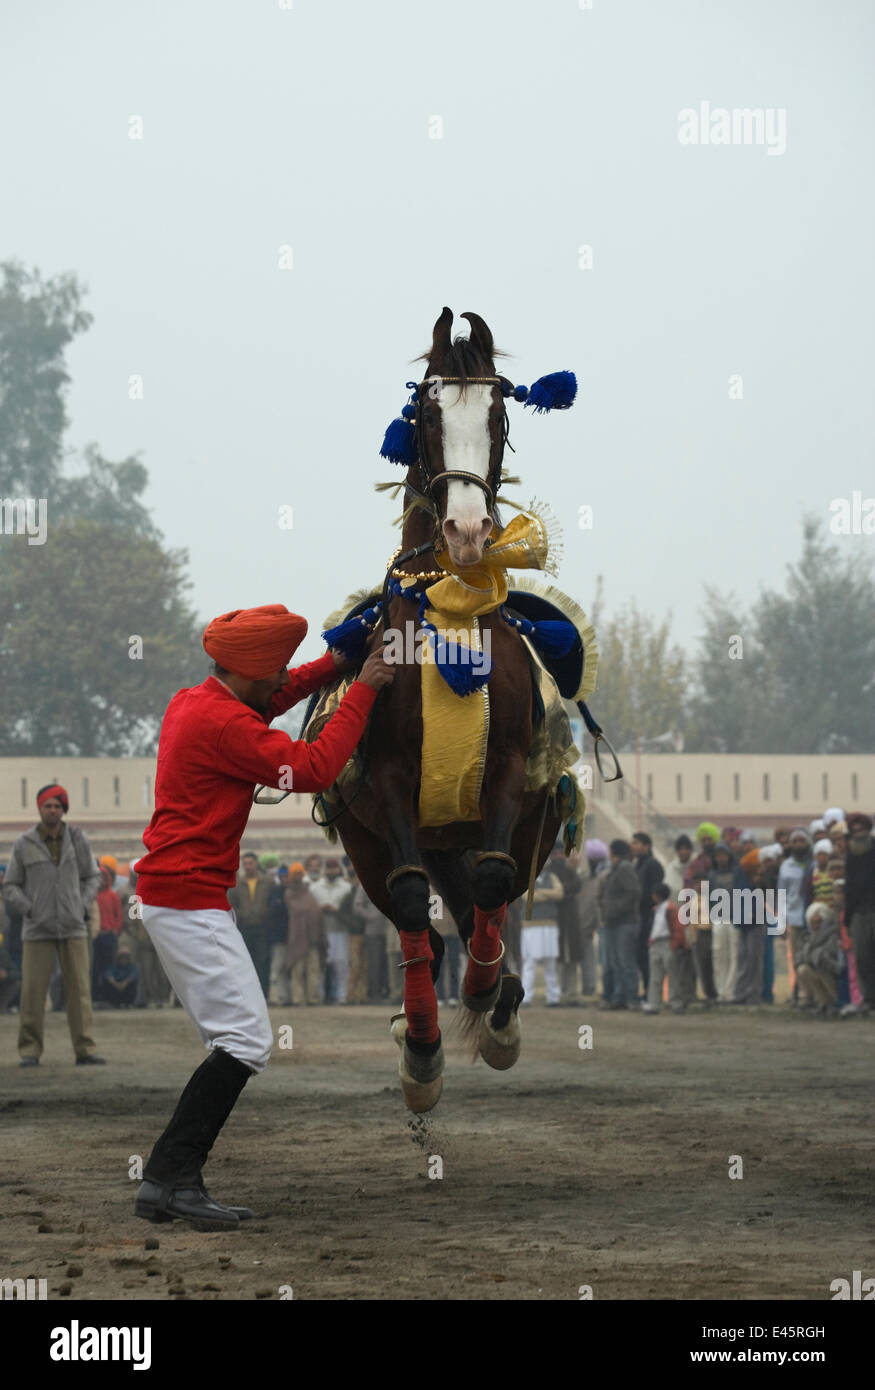 Un homme fait son Nukra Sikh danse du cheval au rythme d'un tambour pendant le festival de Maghi Mela, Muktsar, Punjab, en Inde. Janvier 2010 Banque D'Images